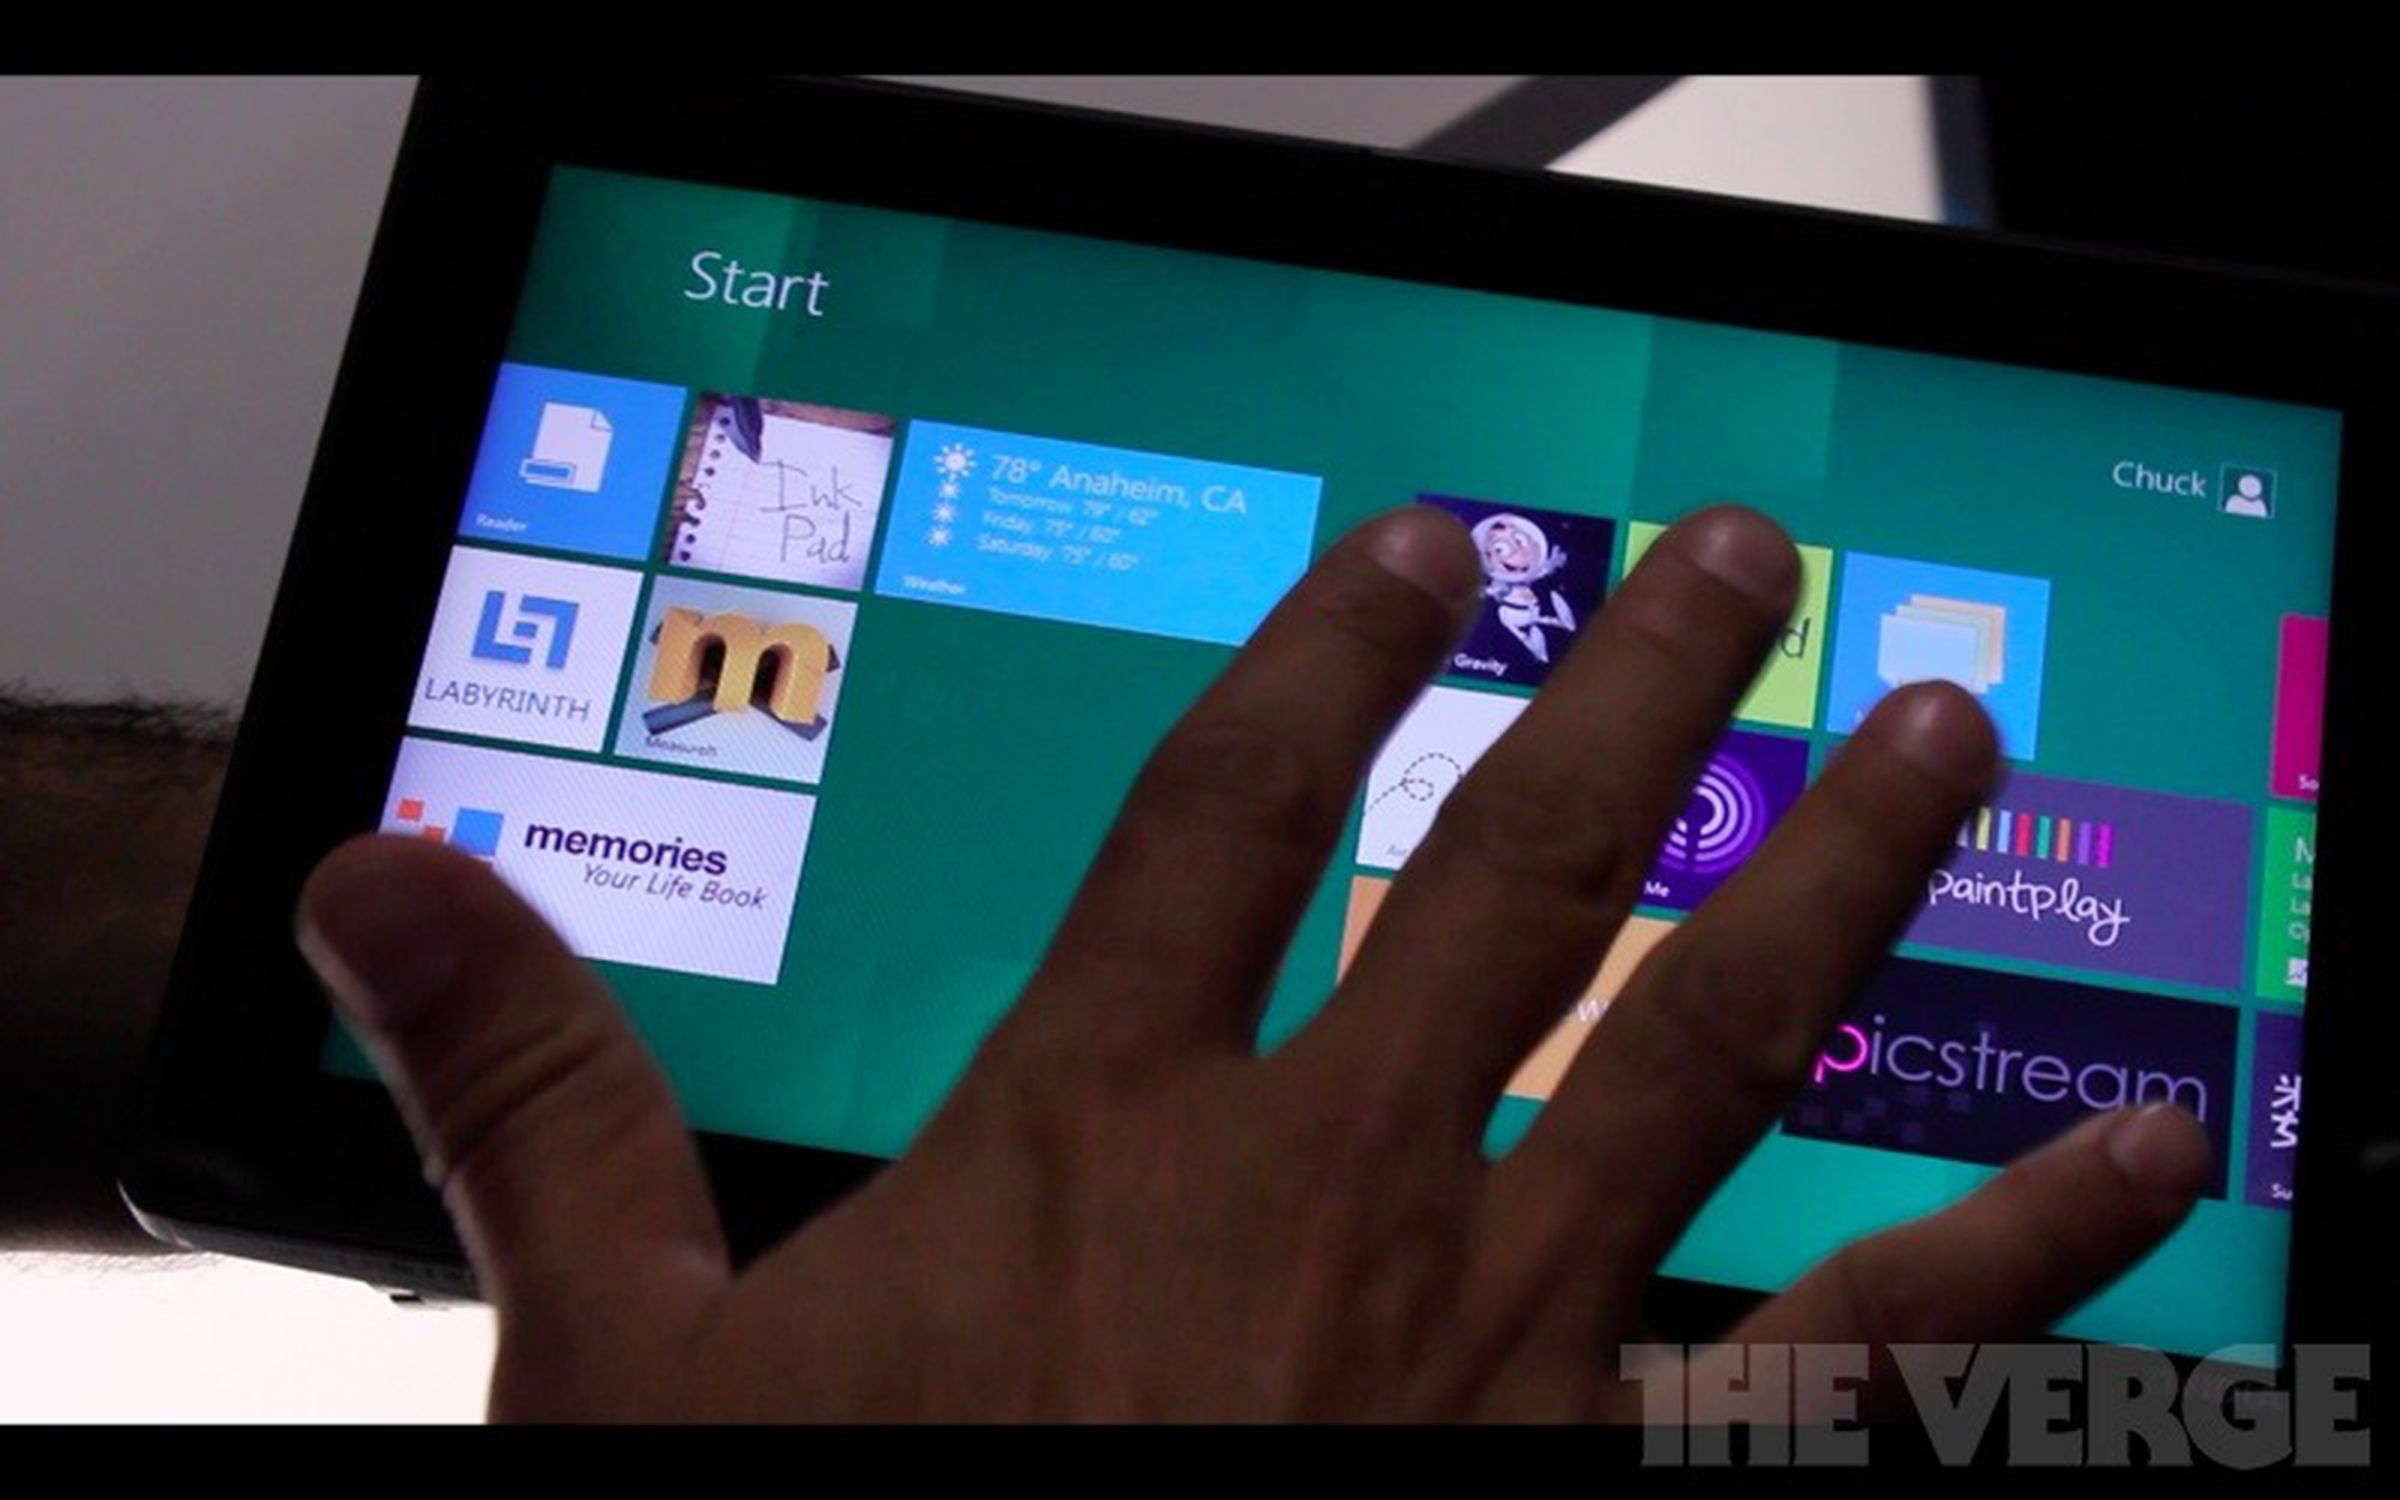 Nvidia Kal-El tablet running Windows 8 developer build